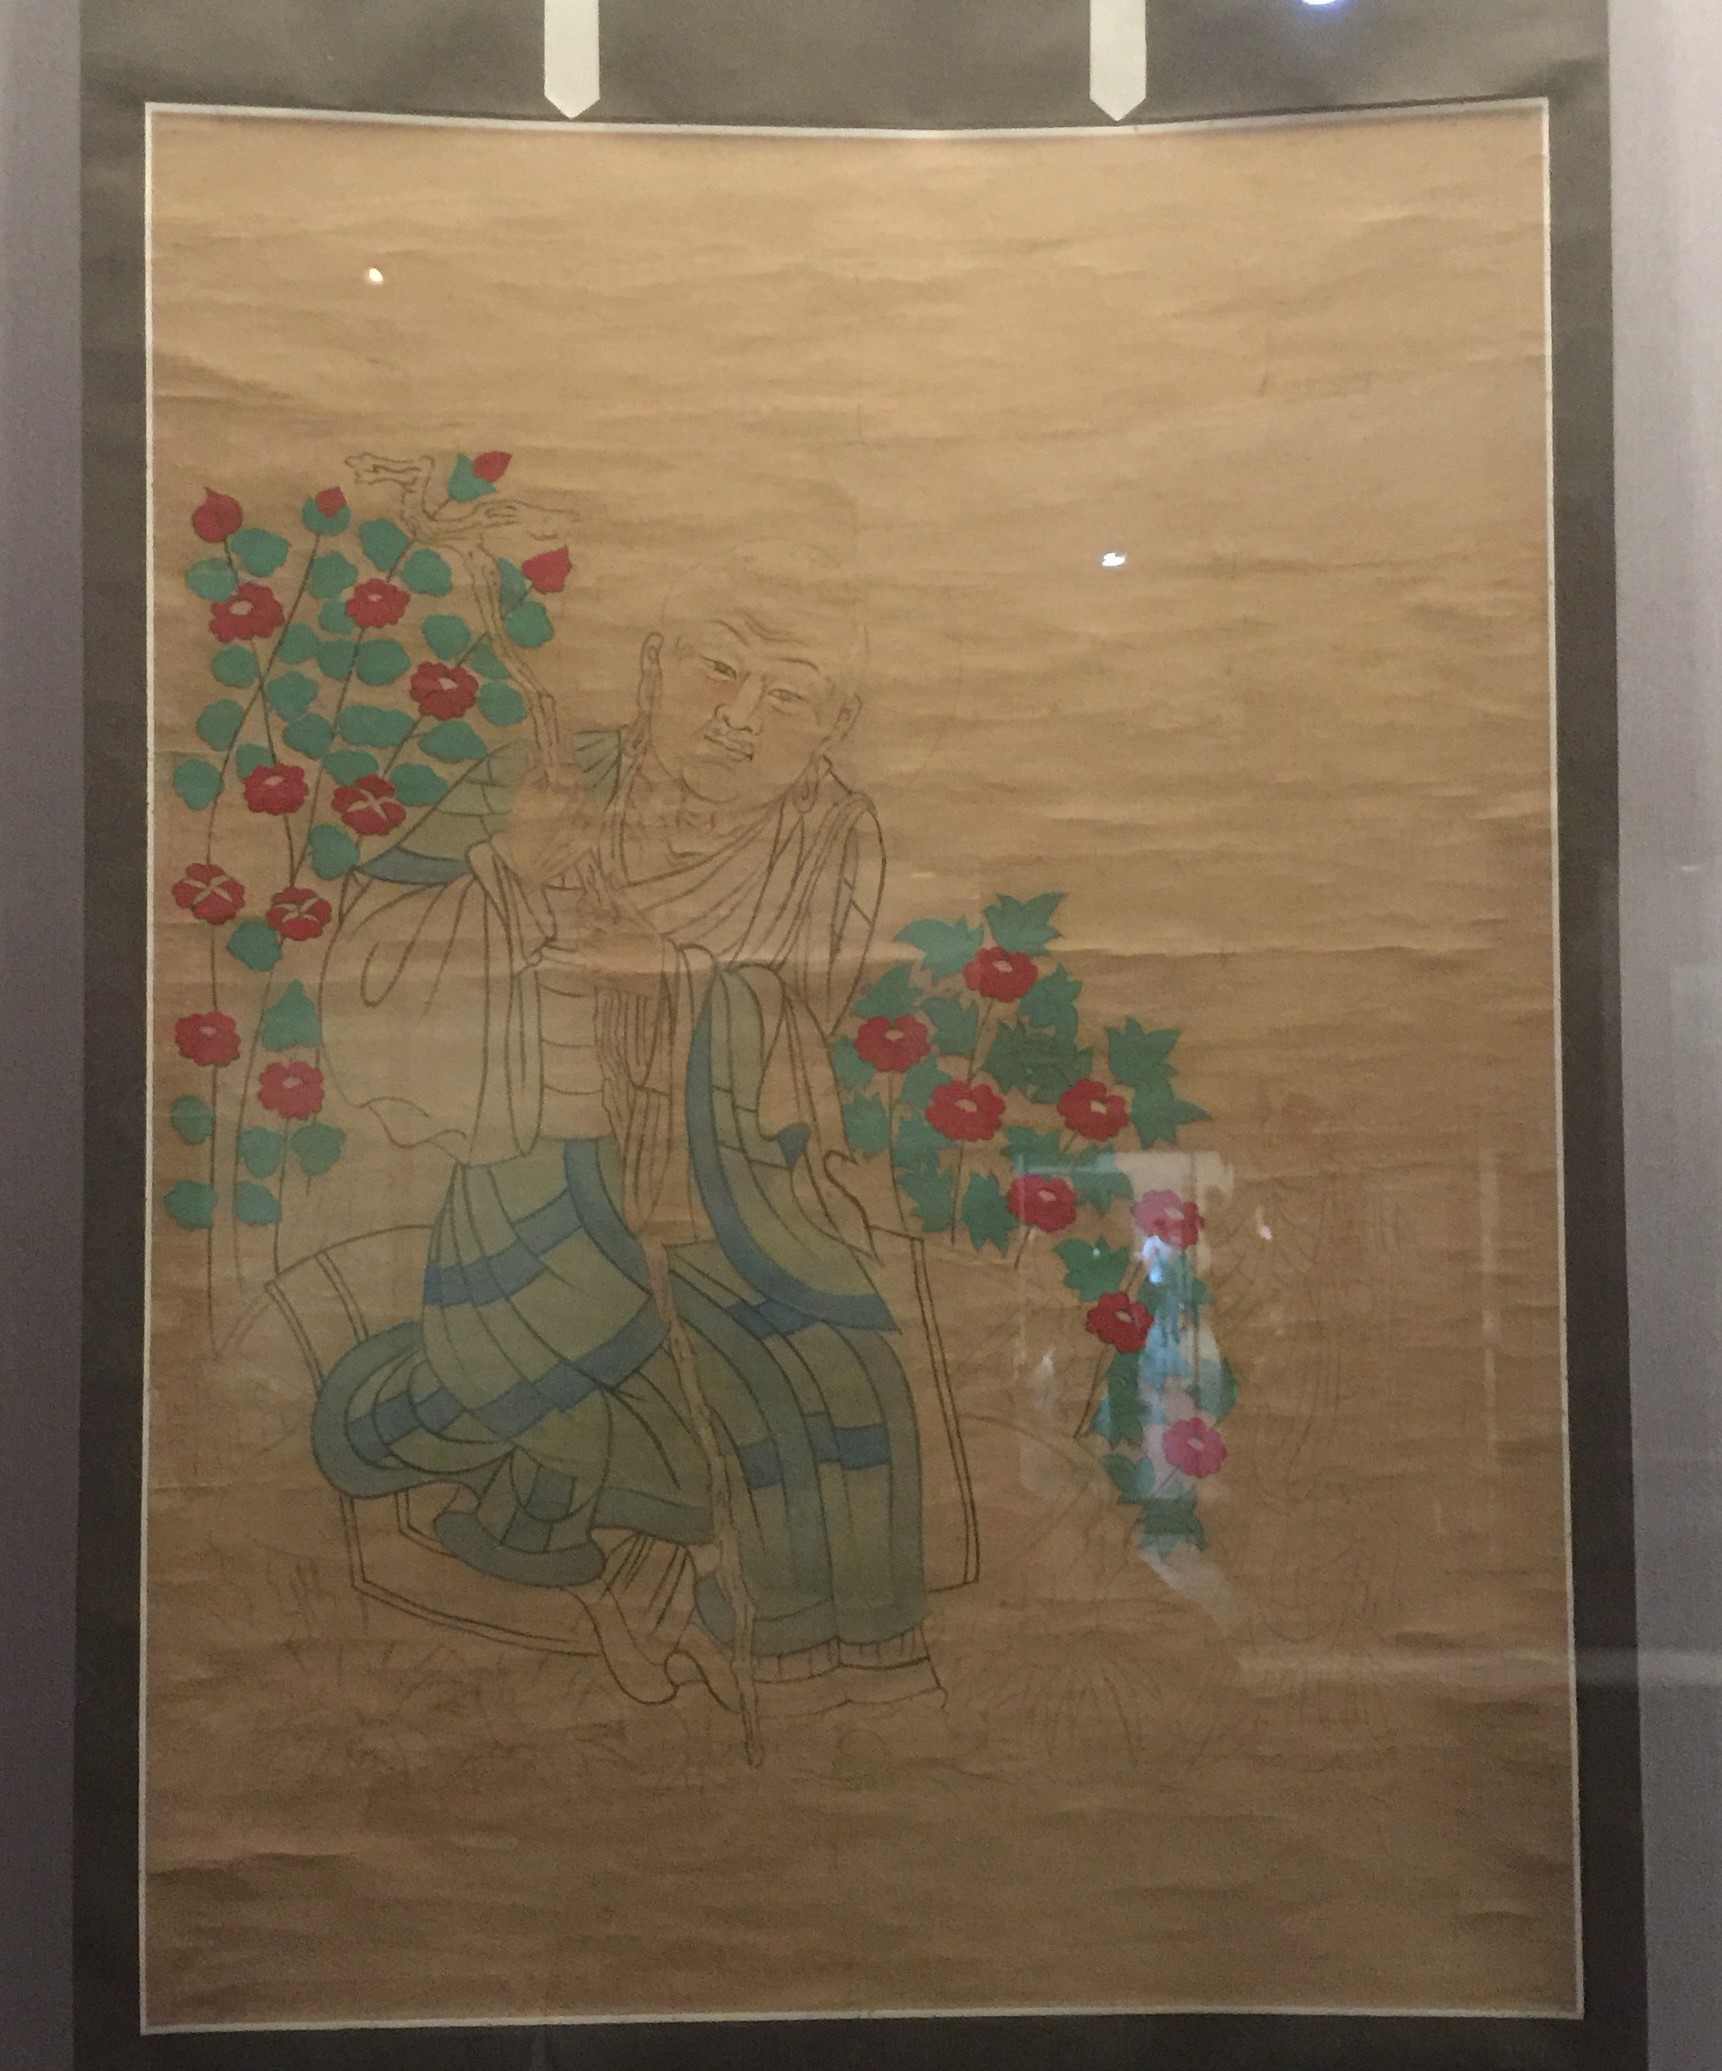 臨摹唐高僧像図軸-張大千芸術館-四川博物院-成都